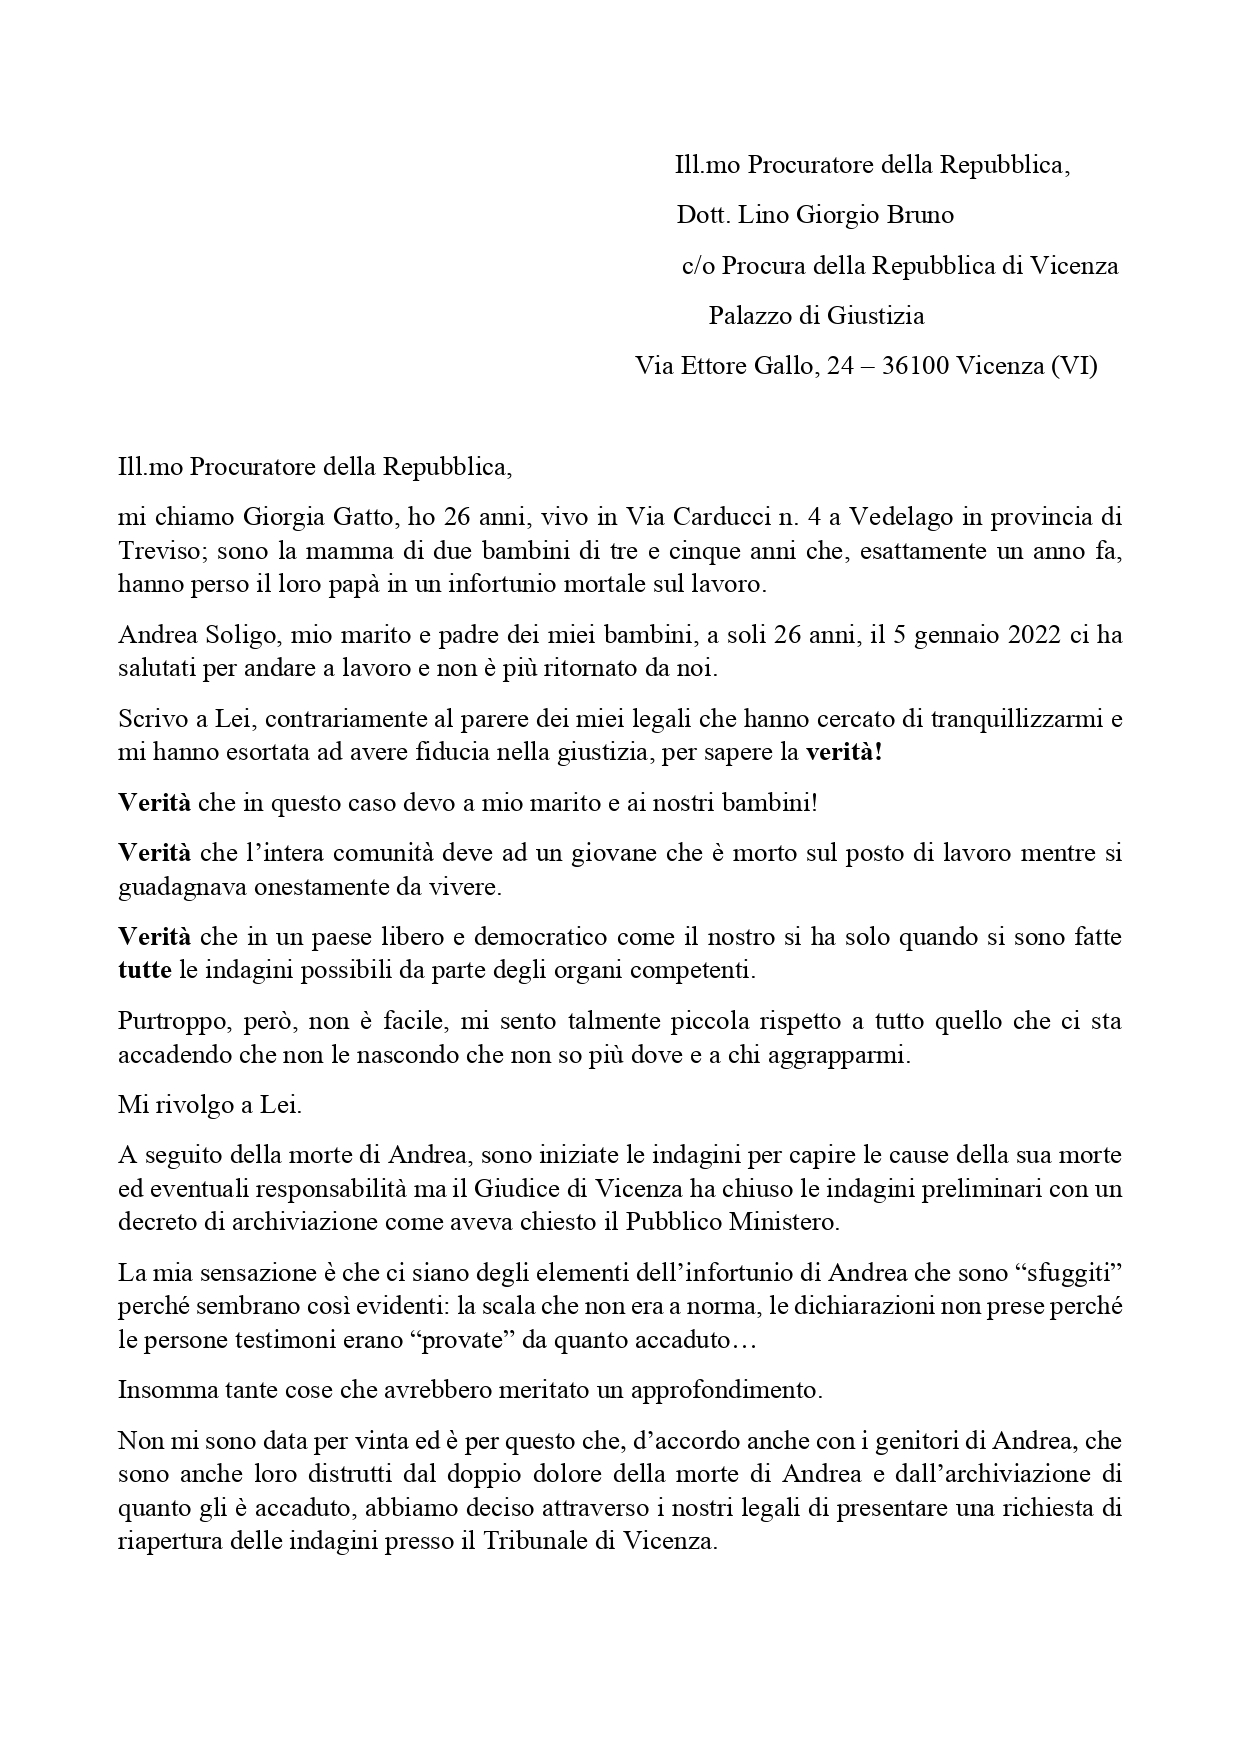 Lettera a Procuratore di Vicenza _page-0001